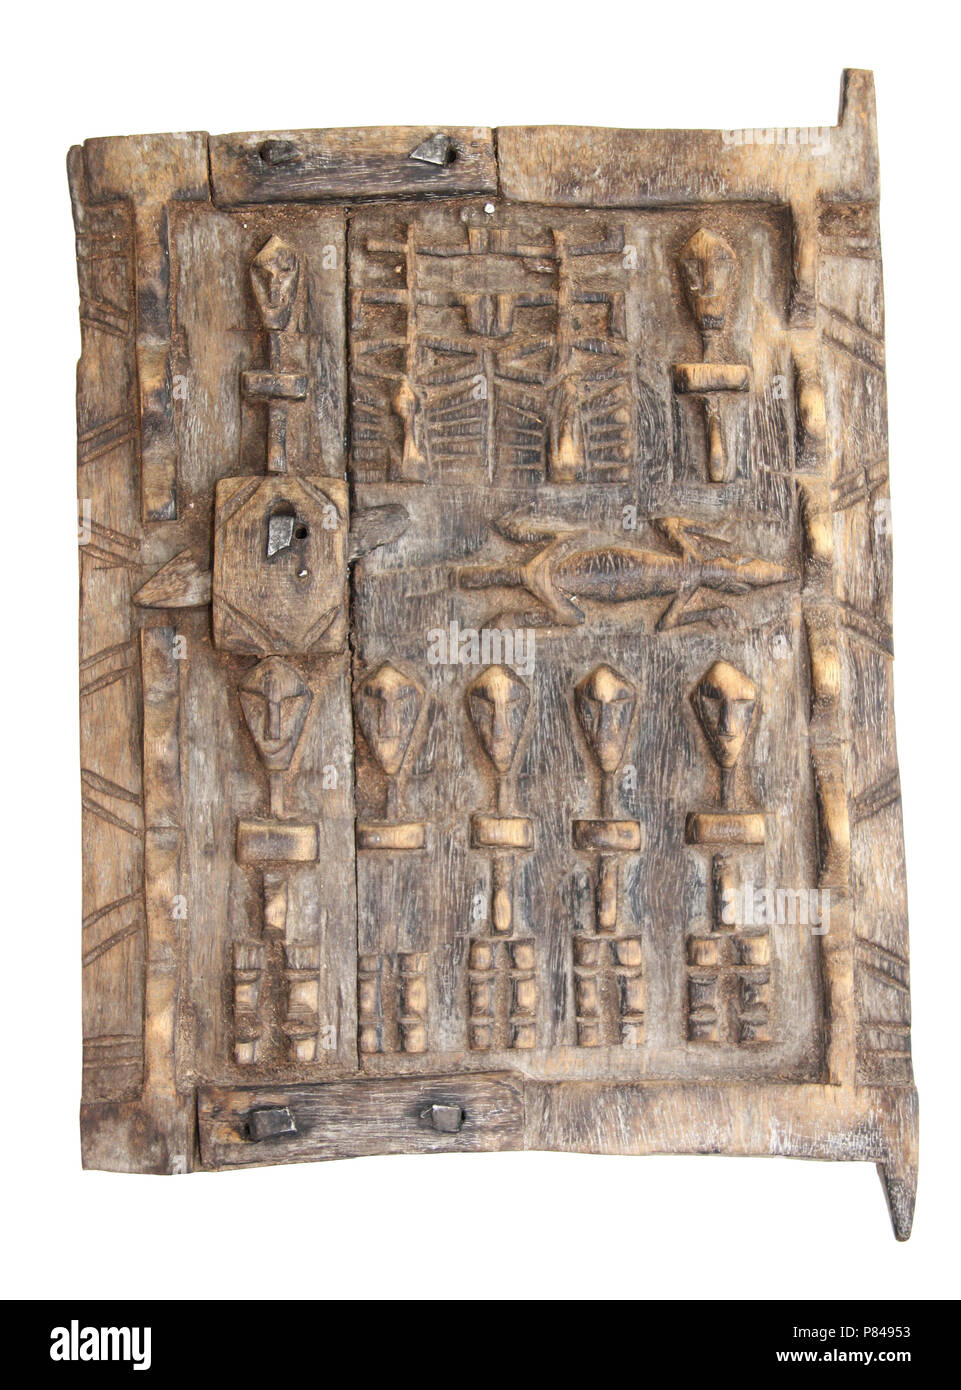 Fenêtre en bois traditionnel marocain volet avec ornement sculpté décoratif avec les gens et le cap Lizard. Isolé sur fond blanc de l'objet Banque D'Images